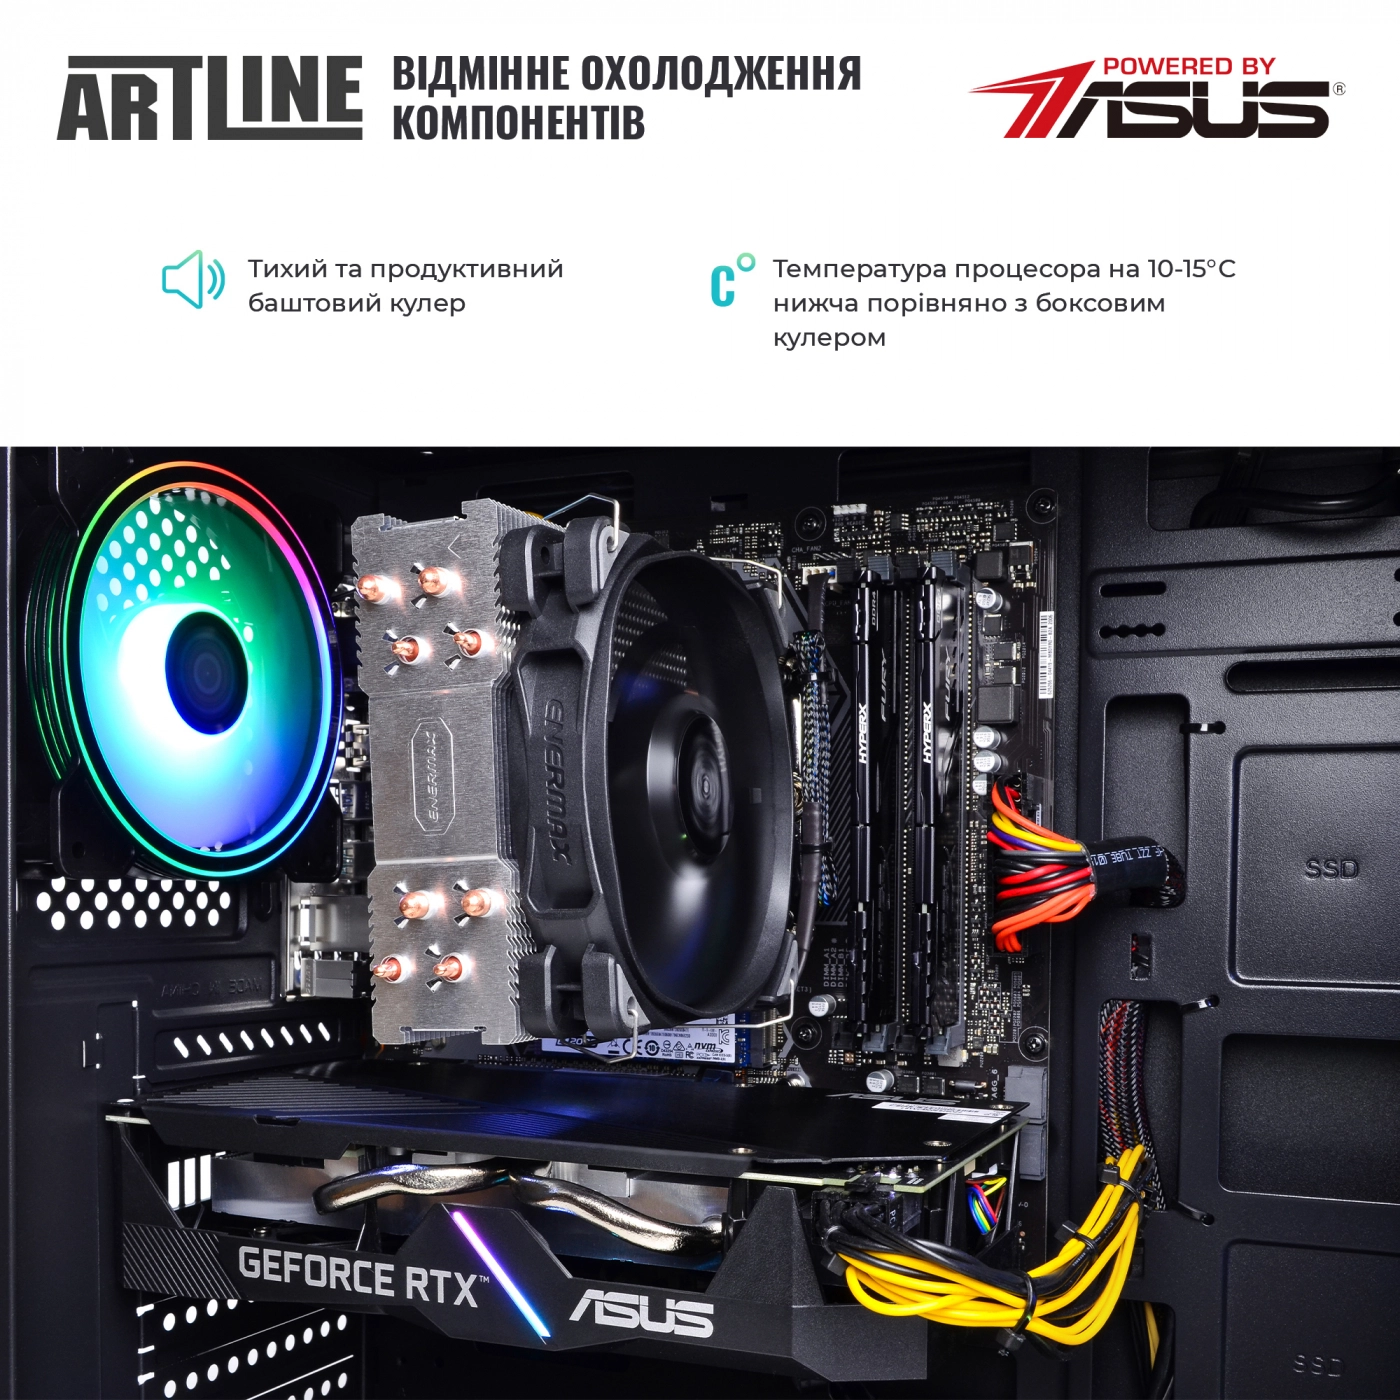 Купить Компьютер ARTLINE Gaming X53v28 - фото 5